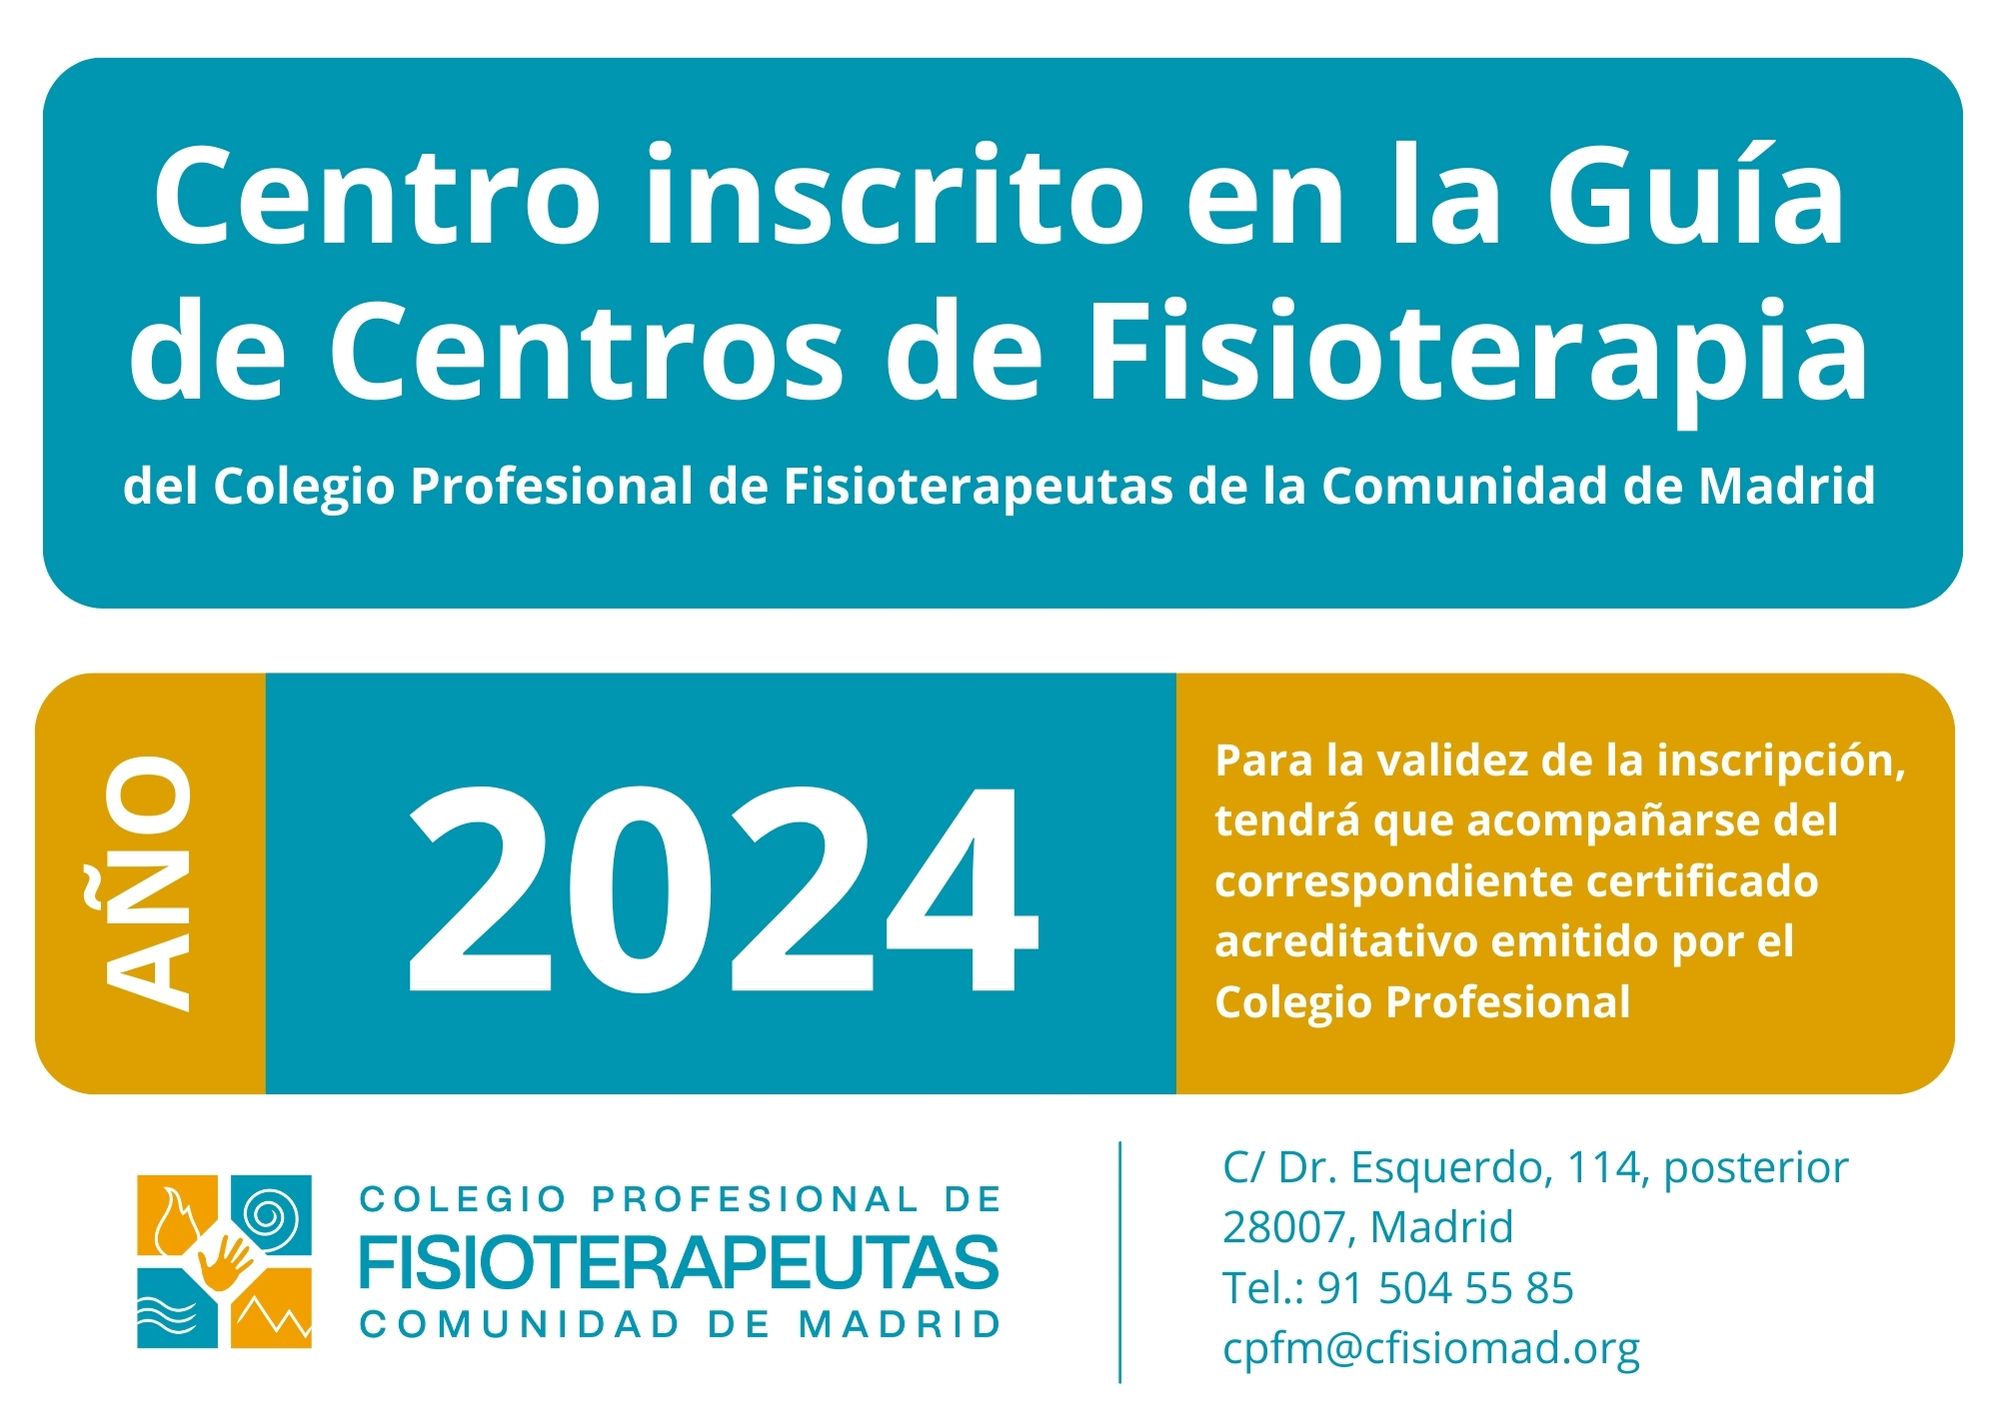 Centro Inscrito en la Guía de Centros de Fisioterapia de la Comunidad de Madrid